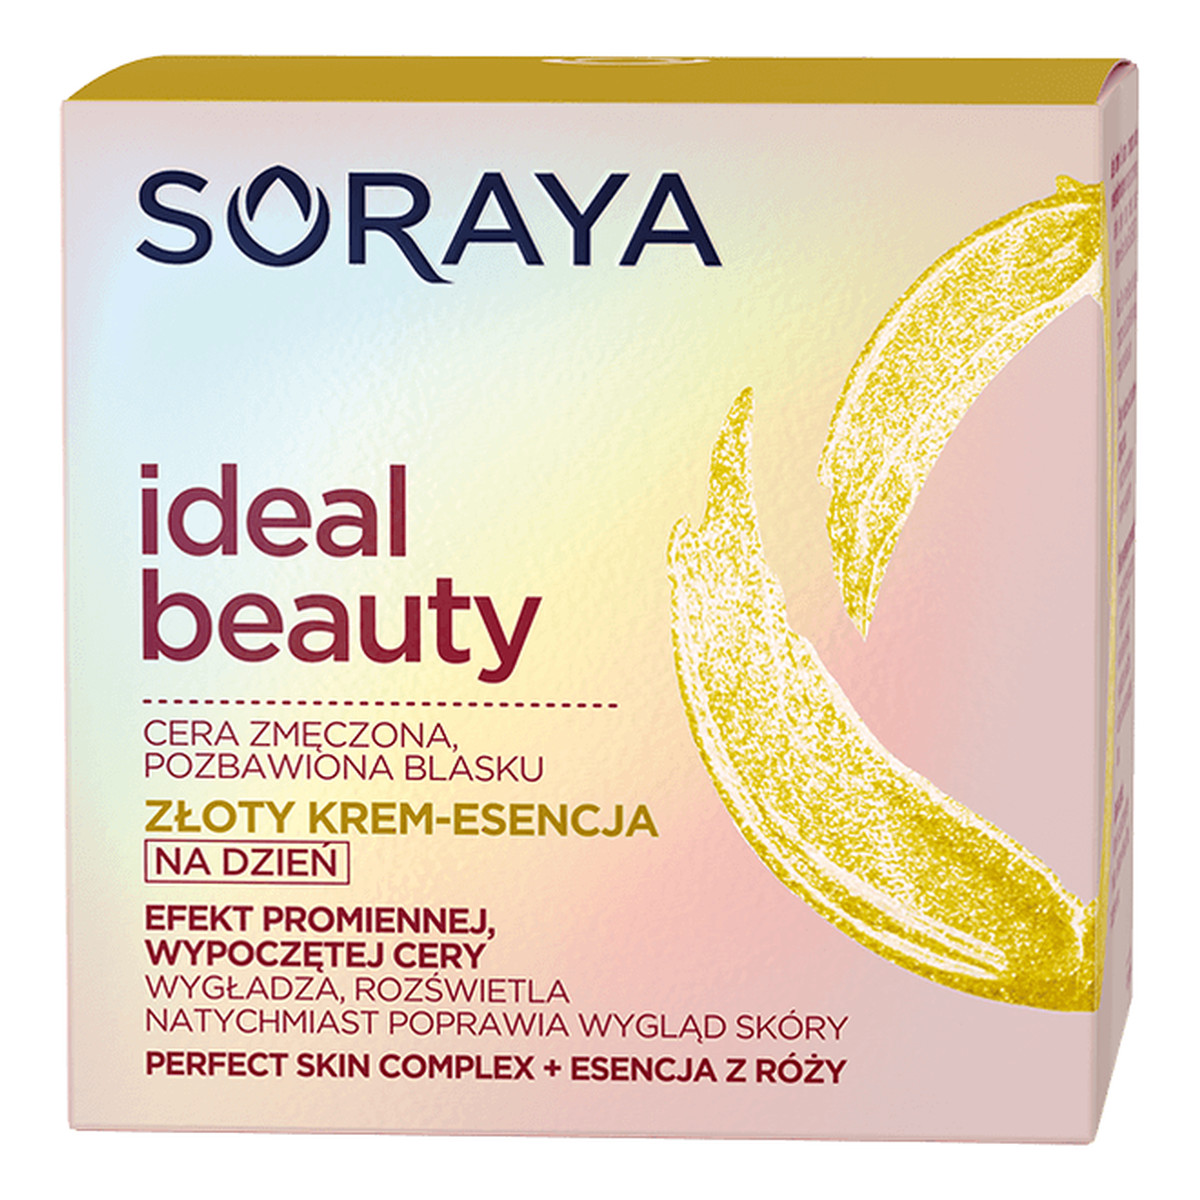 Soraya Ideal Beauty Złoty krem-esencja do cery zmęczonej, pozbawionej blasku 50ml